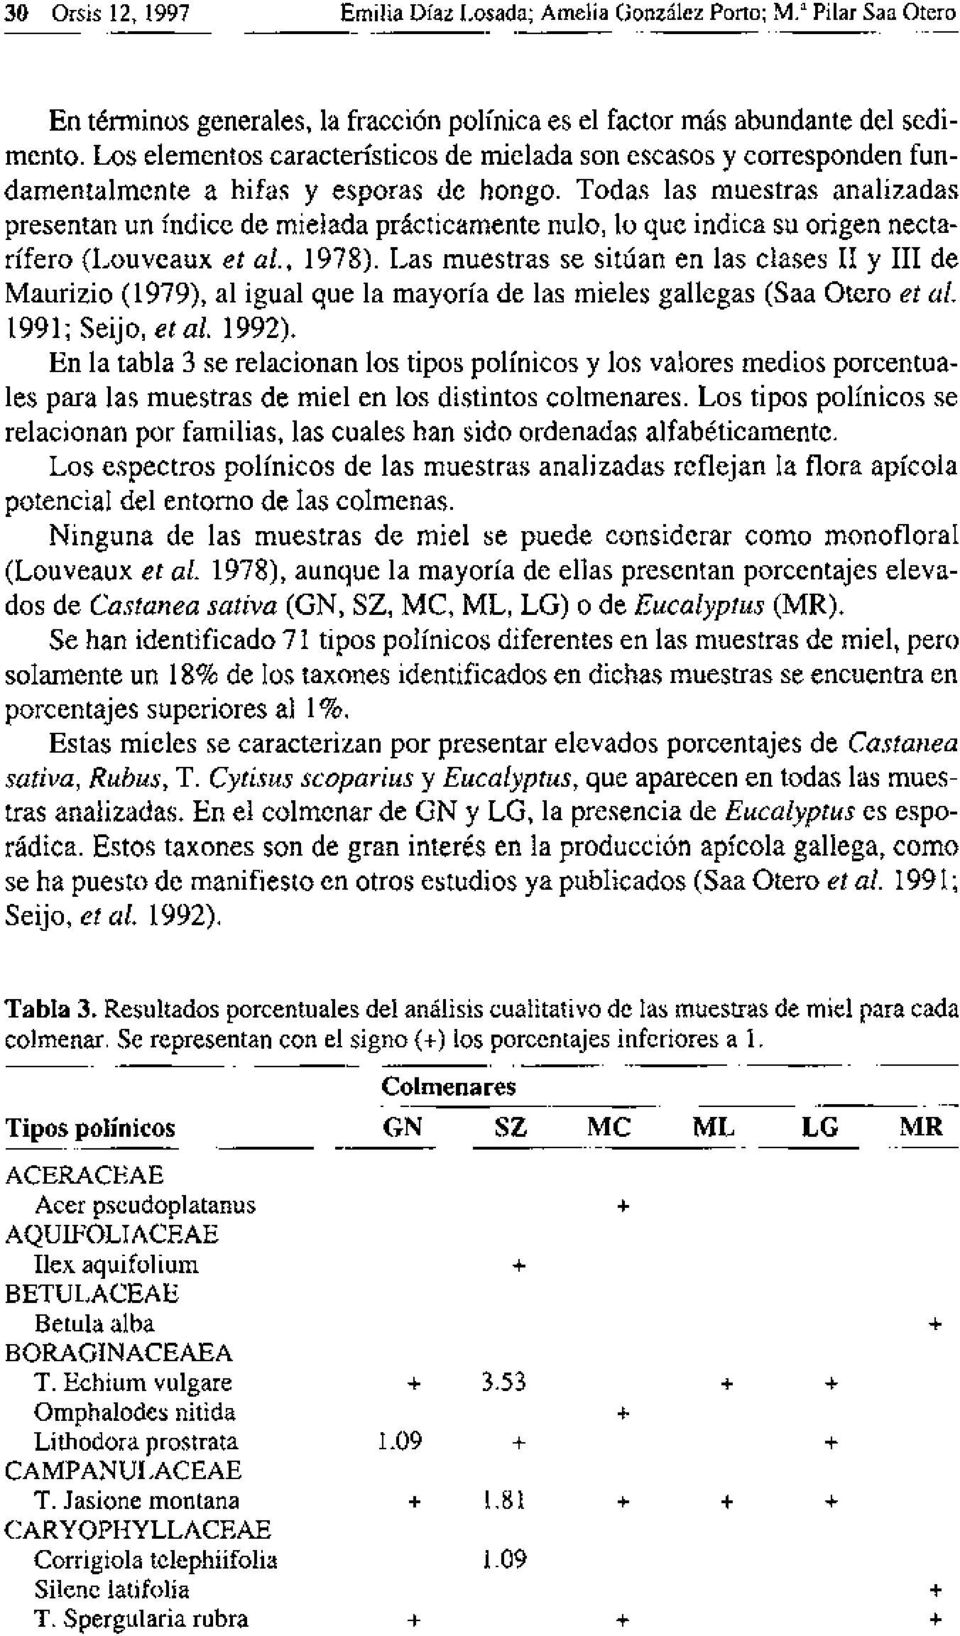 Todas las muestras analizadas presentan un índice de mielada prácticamente nulo, 10 que indica su origen nectarifero (Louveaux et al., 1978).